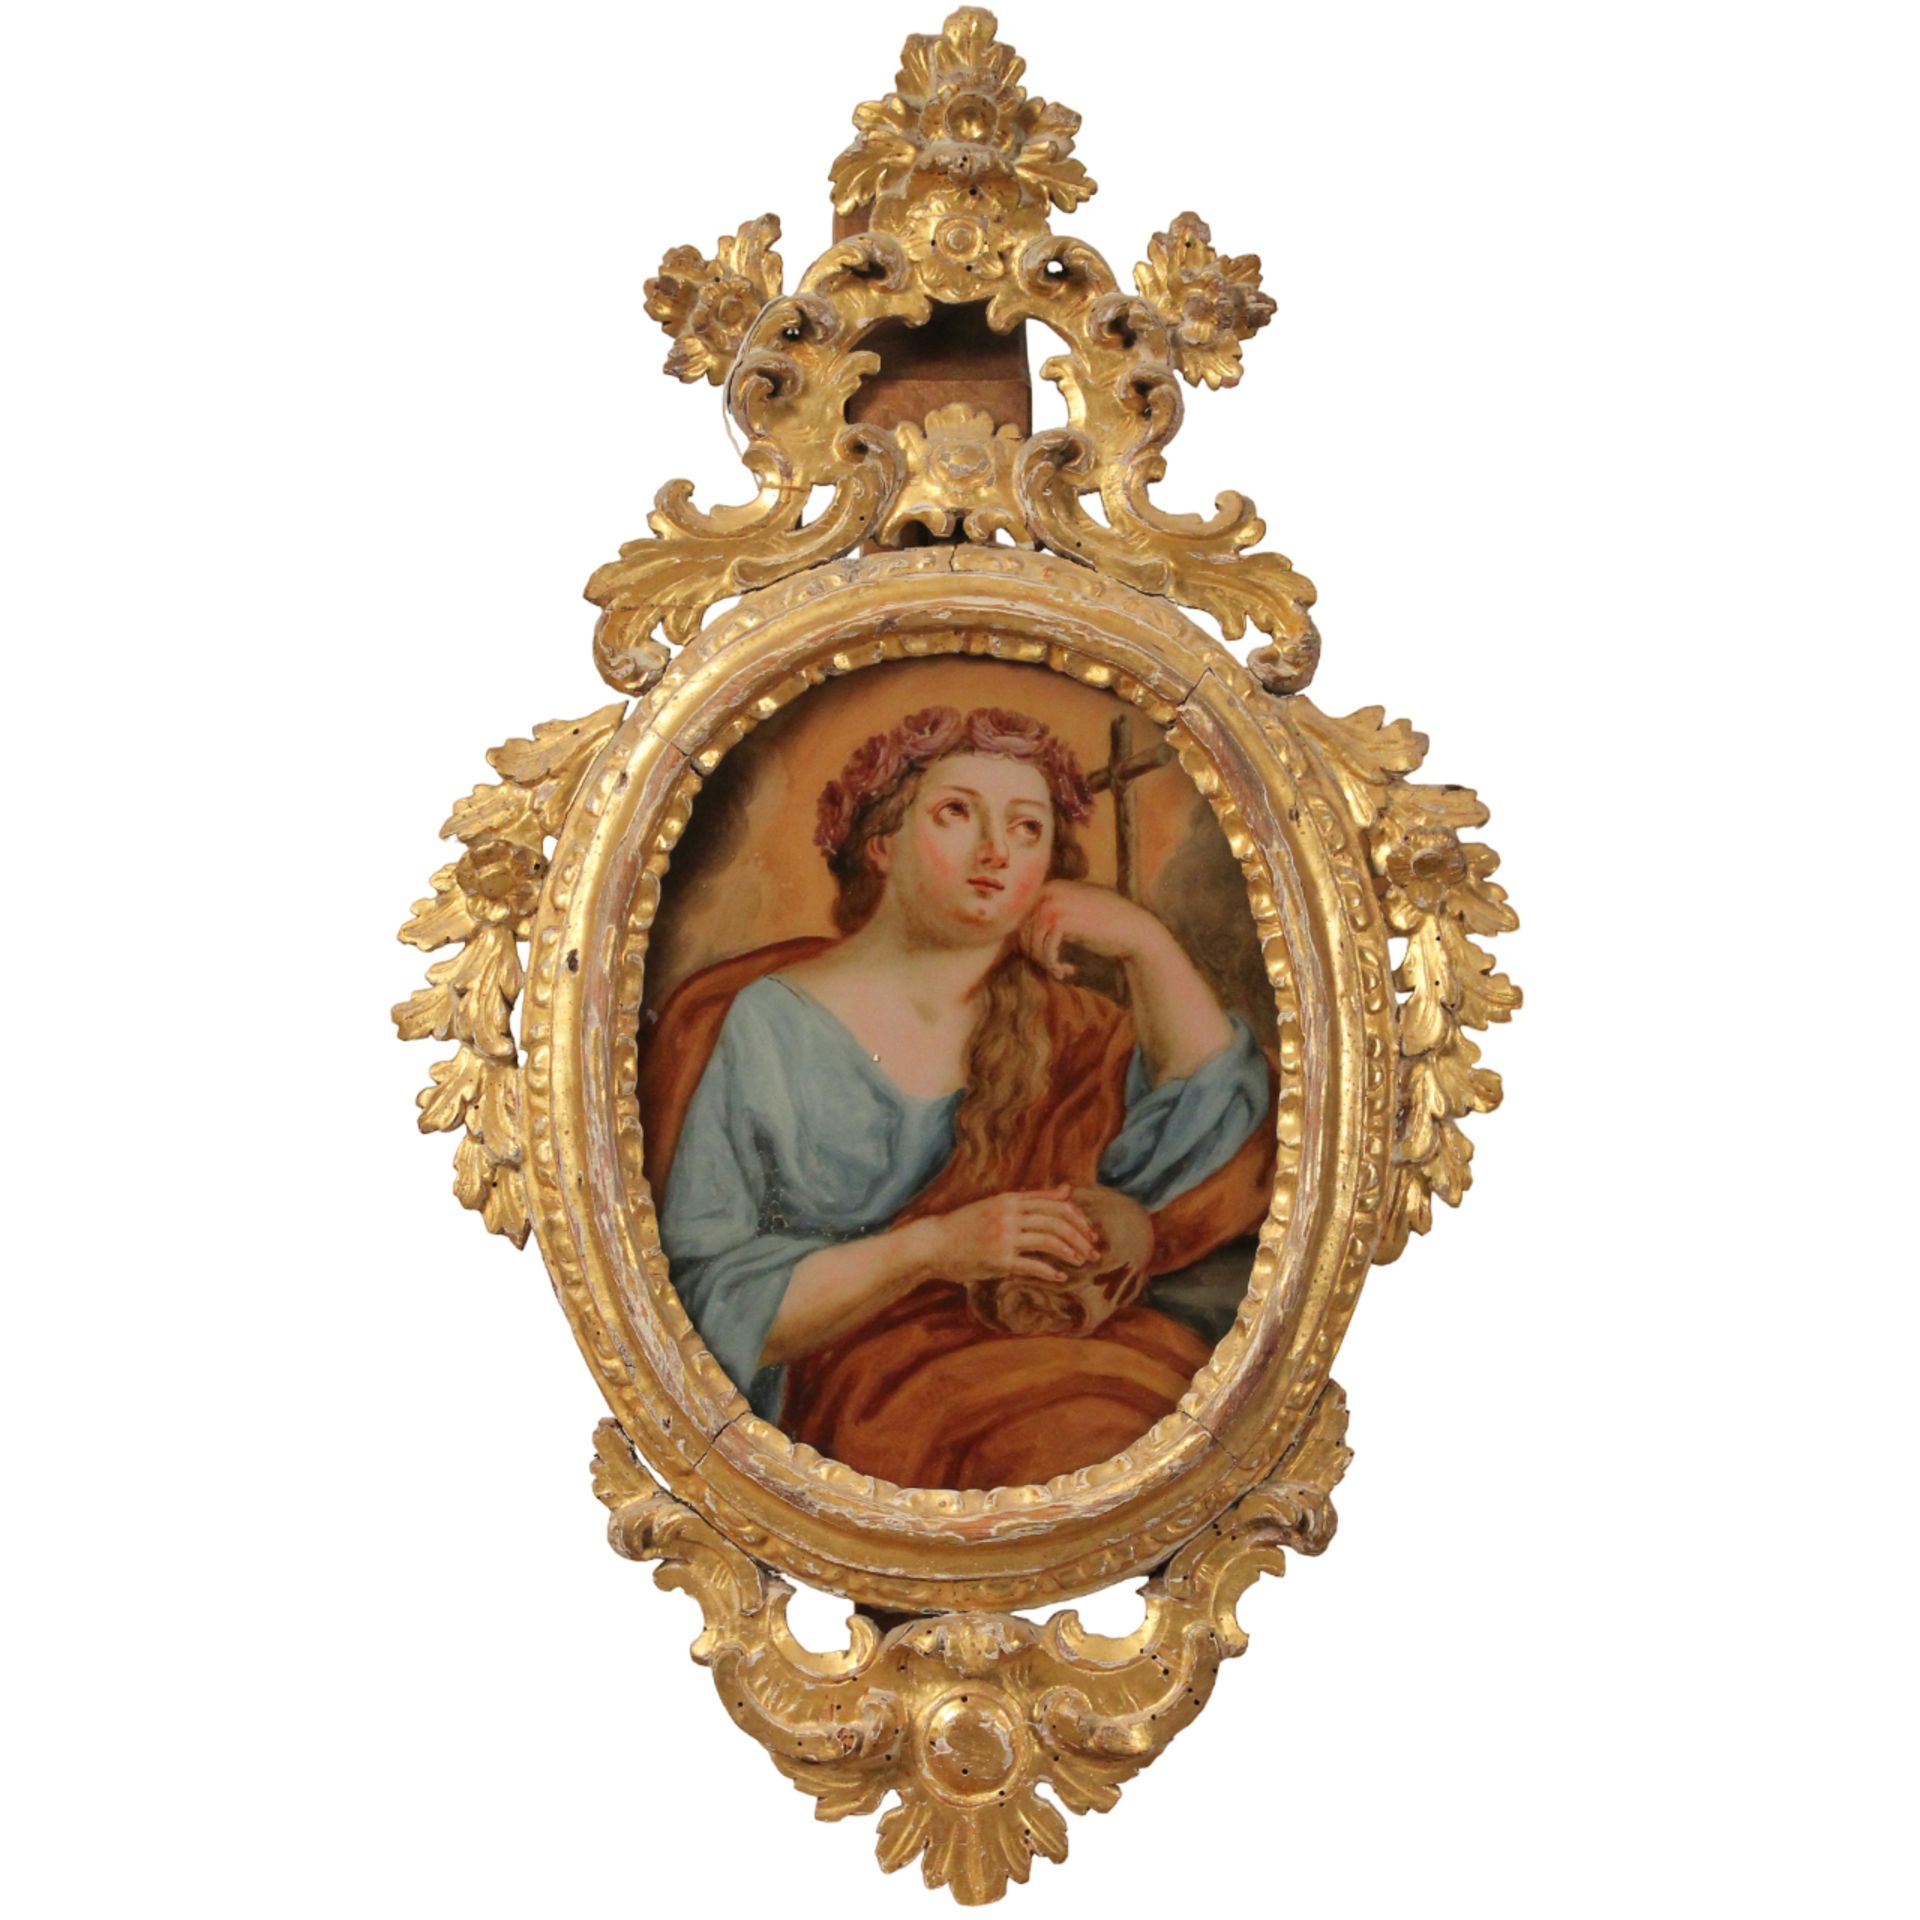 Scuola siciliana degli inizi del secolo XVIII "Santa Rosalia e la Madonna" - Sicilian school of the